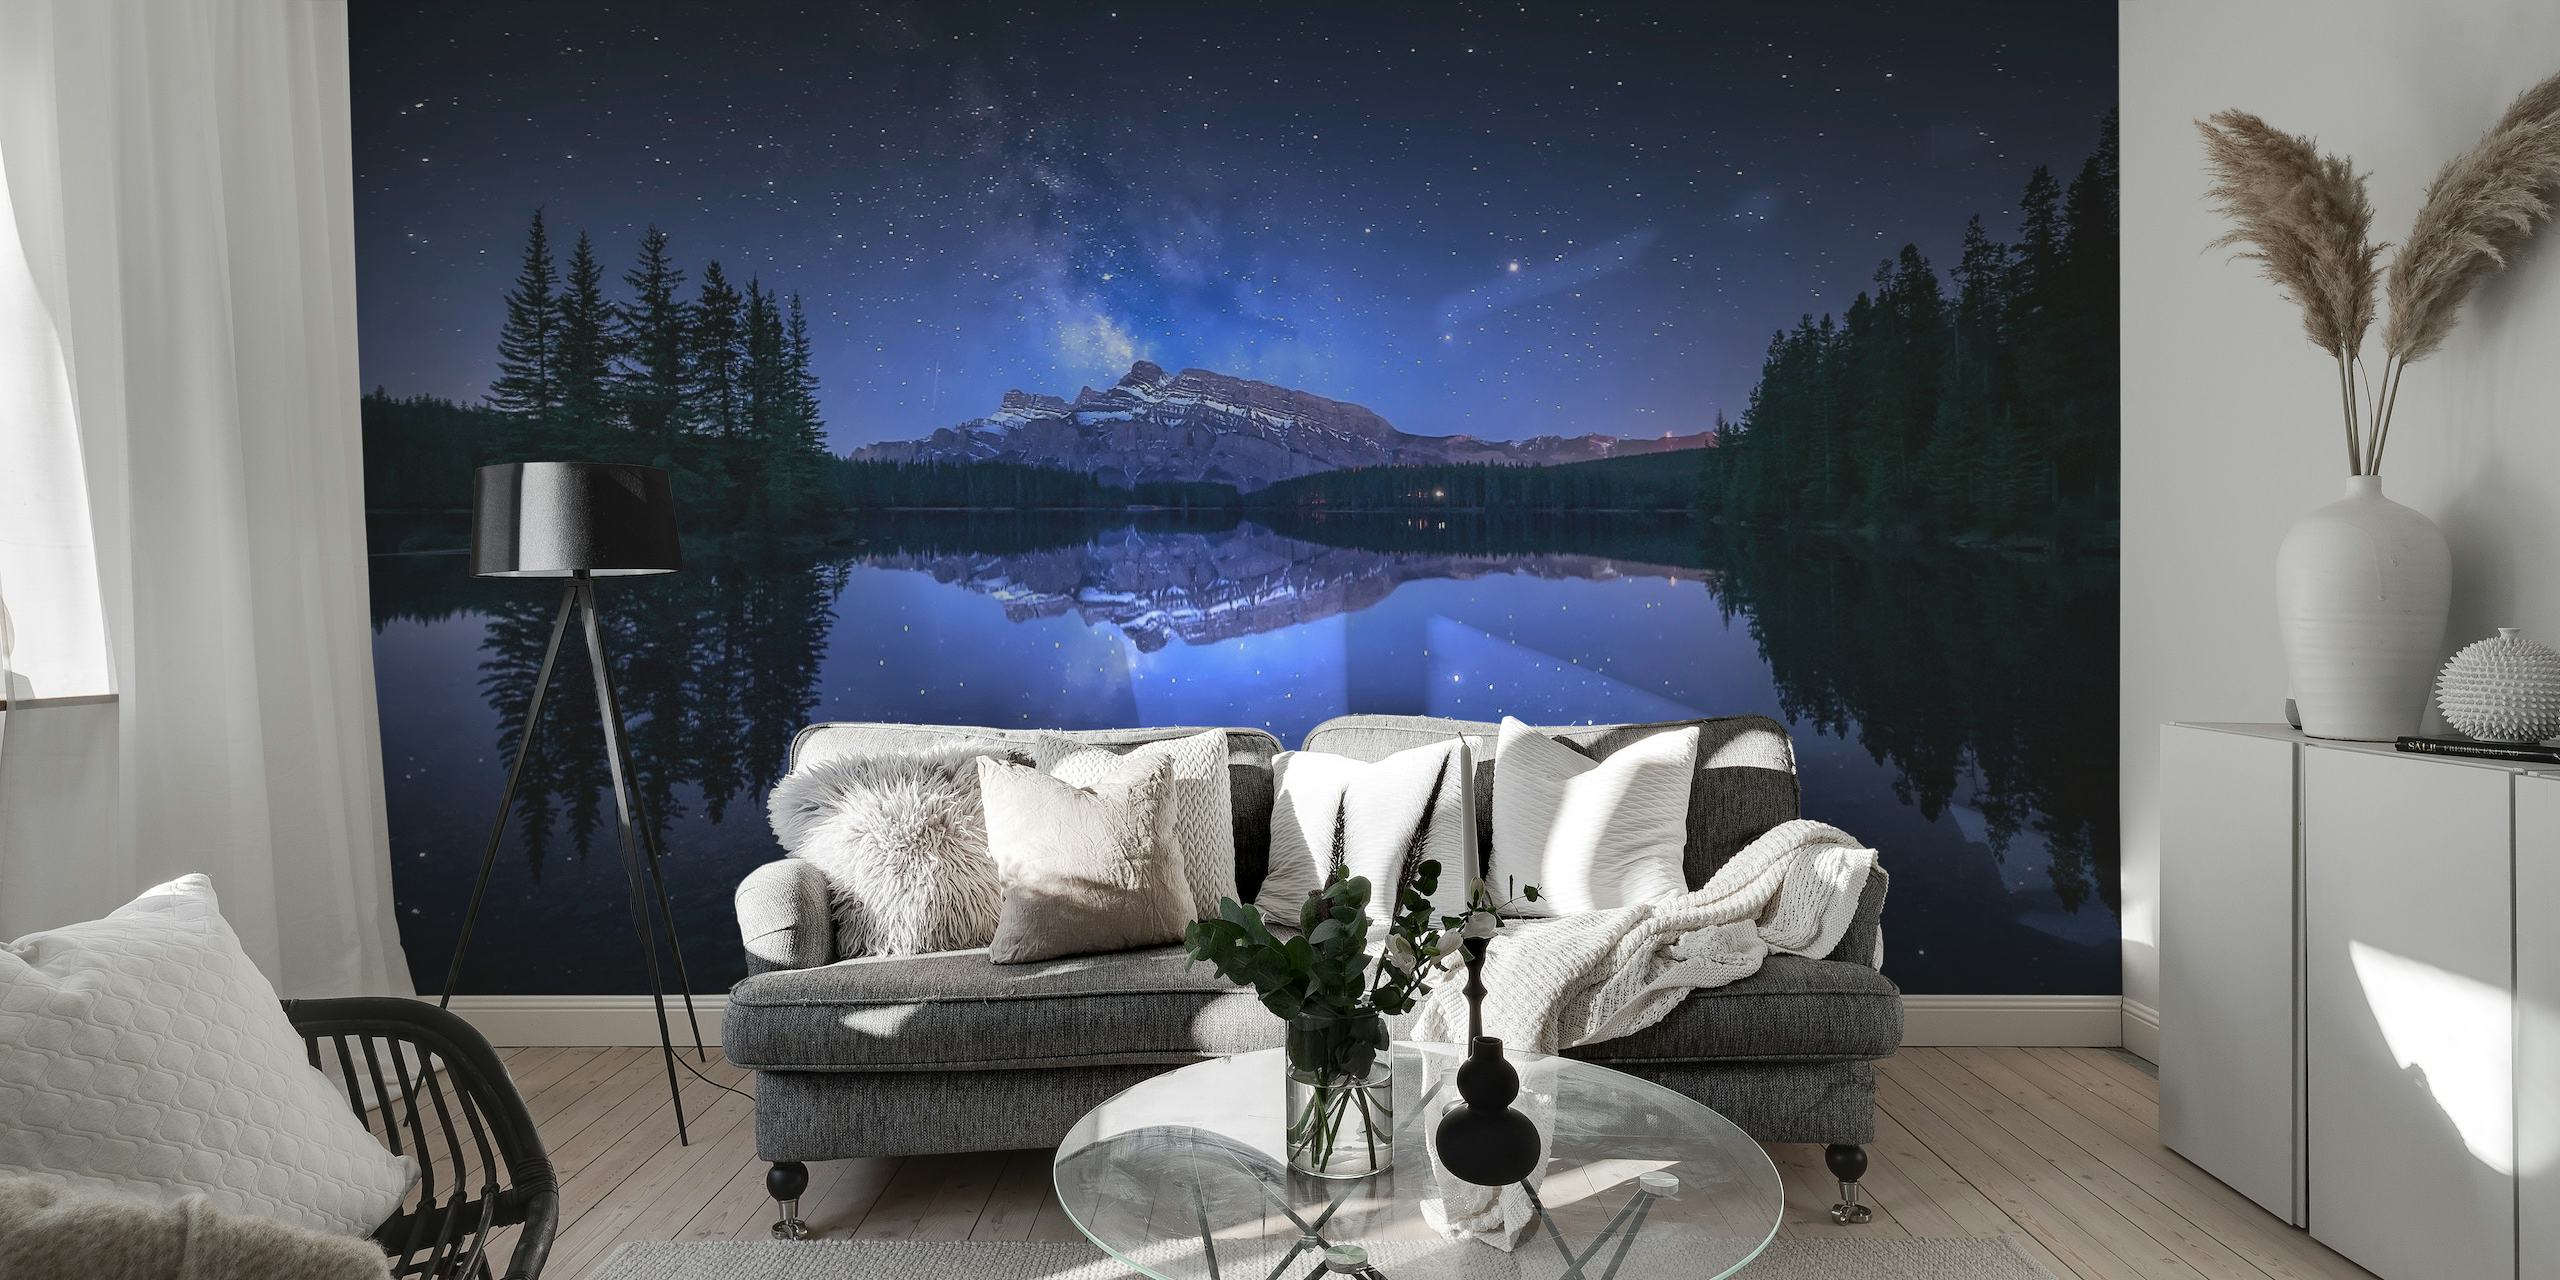 Hvězdná noc nad jezerem Two Jack s lesní siluetou a fascinujícím odrazem ve vodní nástěnné malbě